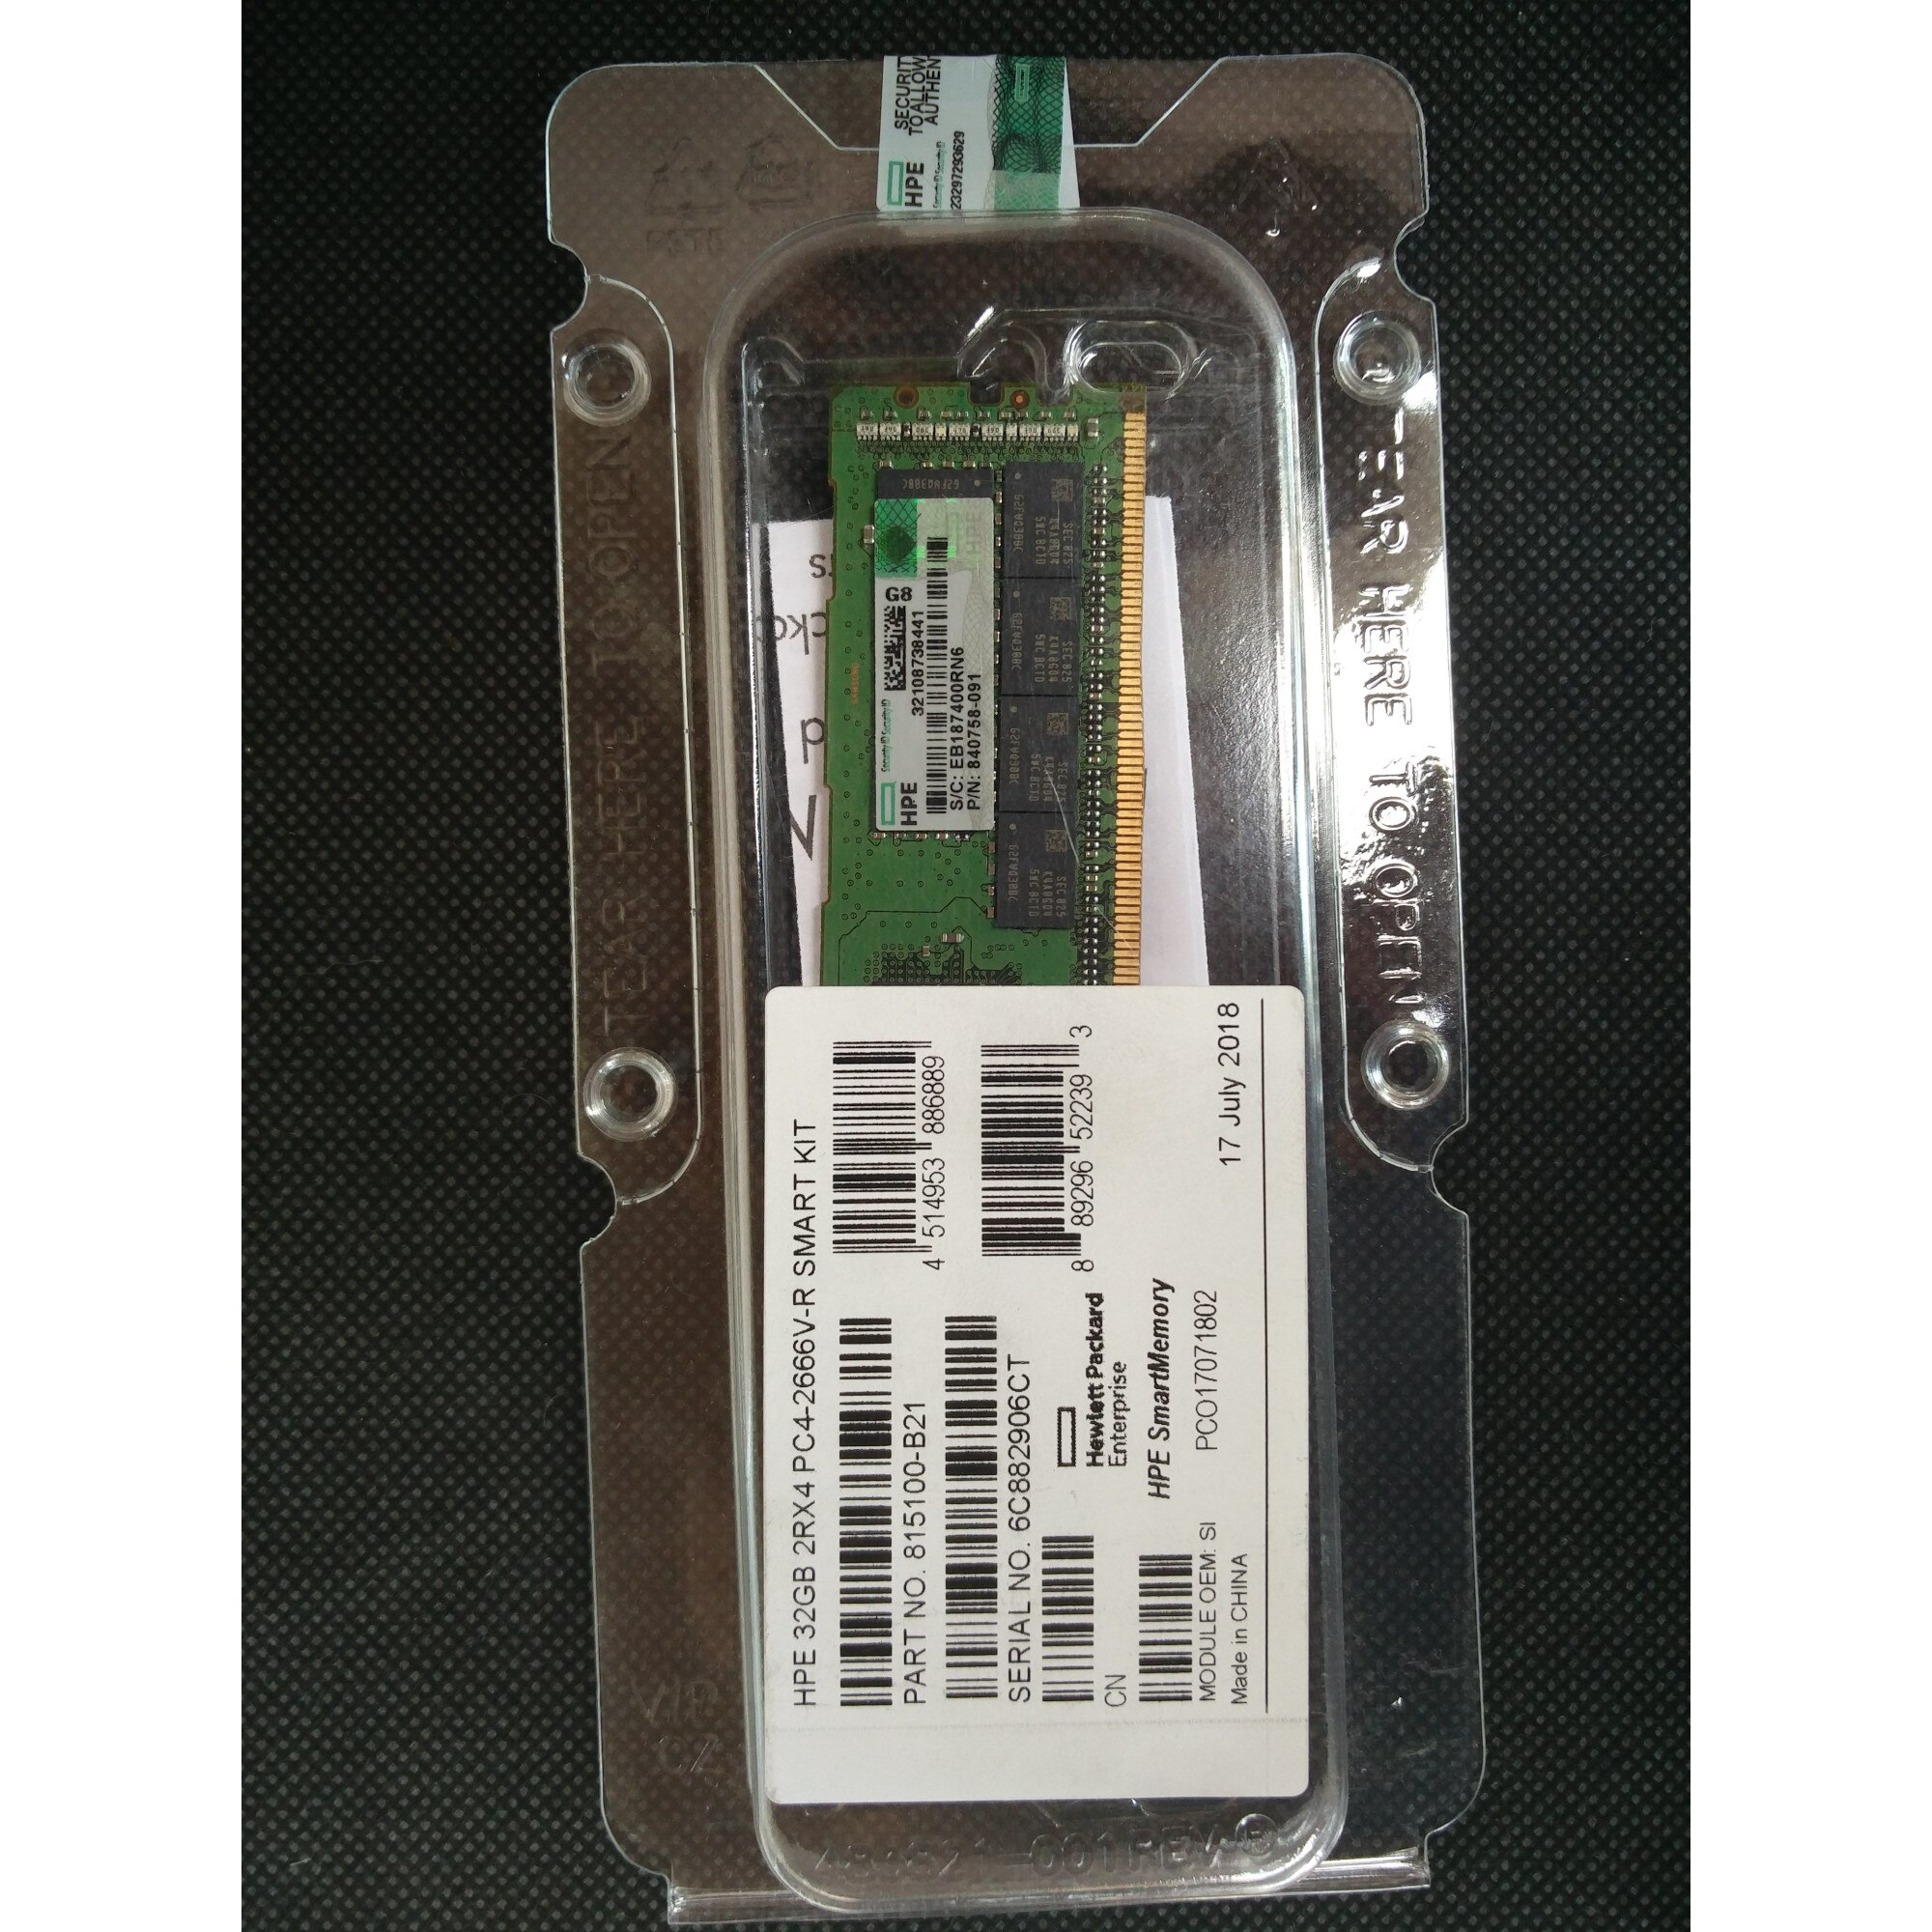 HPE 32GB (1x32GB) Dual Rank x4 DDR4-2666 CAS-19-19-19 Registered Smart  Memory Kit